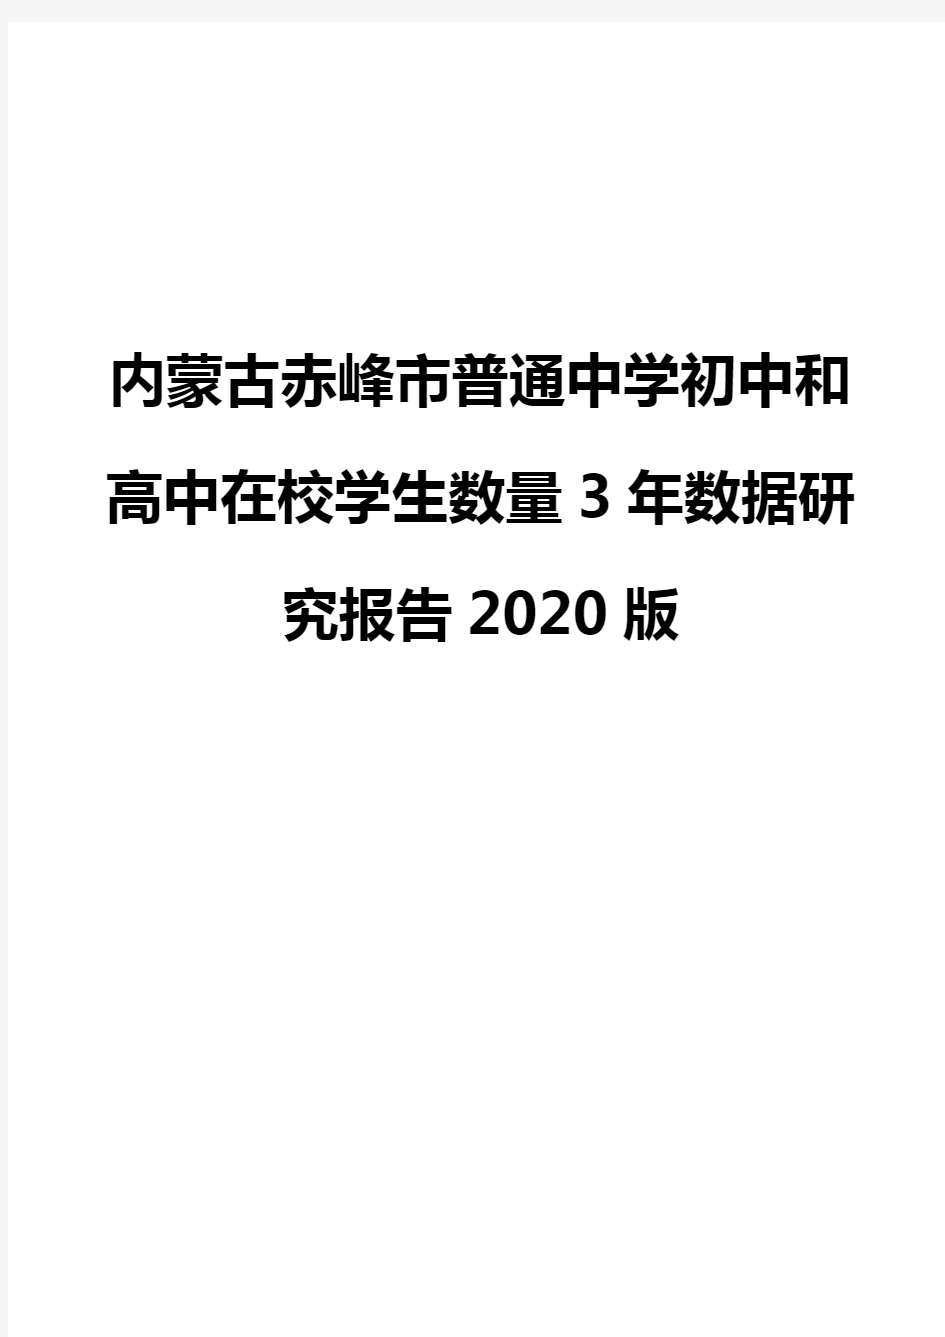 内蒙古赤峰市普通中学初中和高中在校学生数量3年数据研究报告2020版